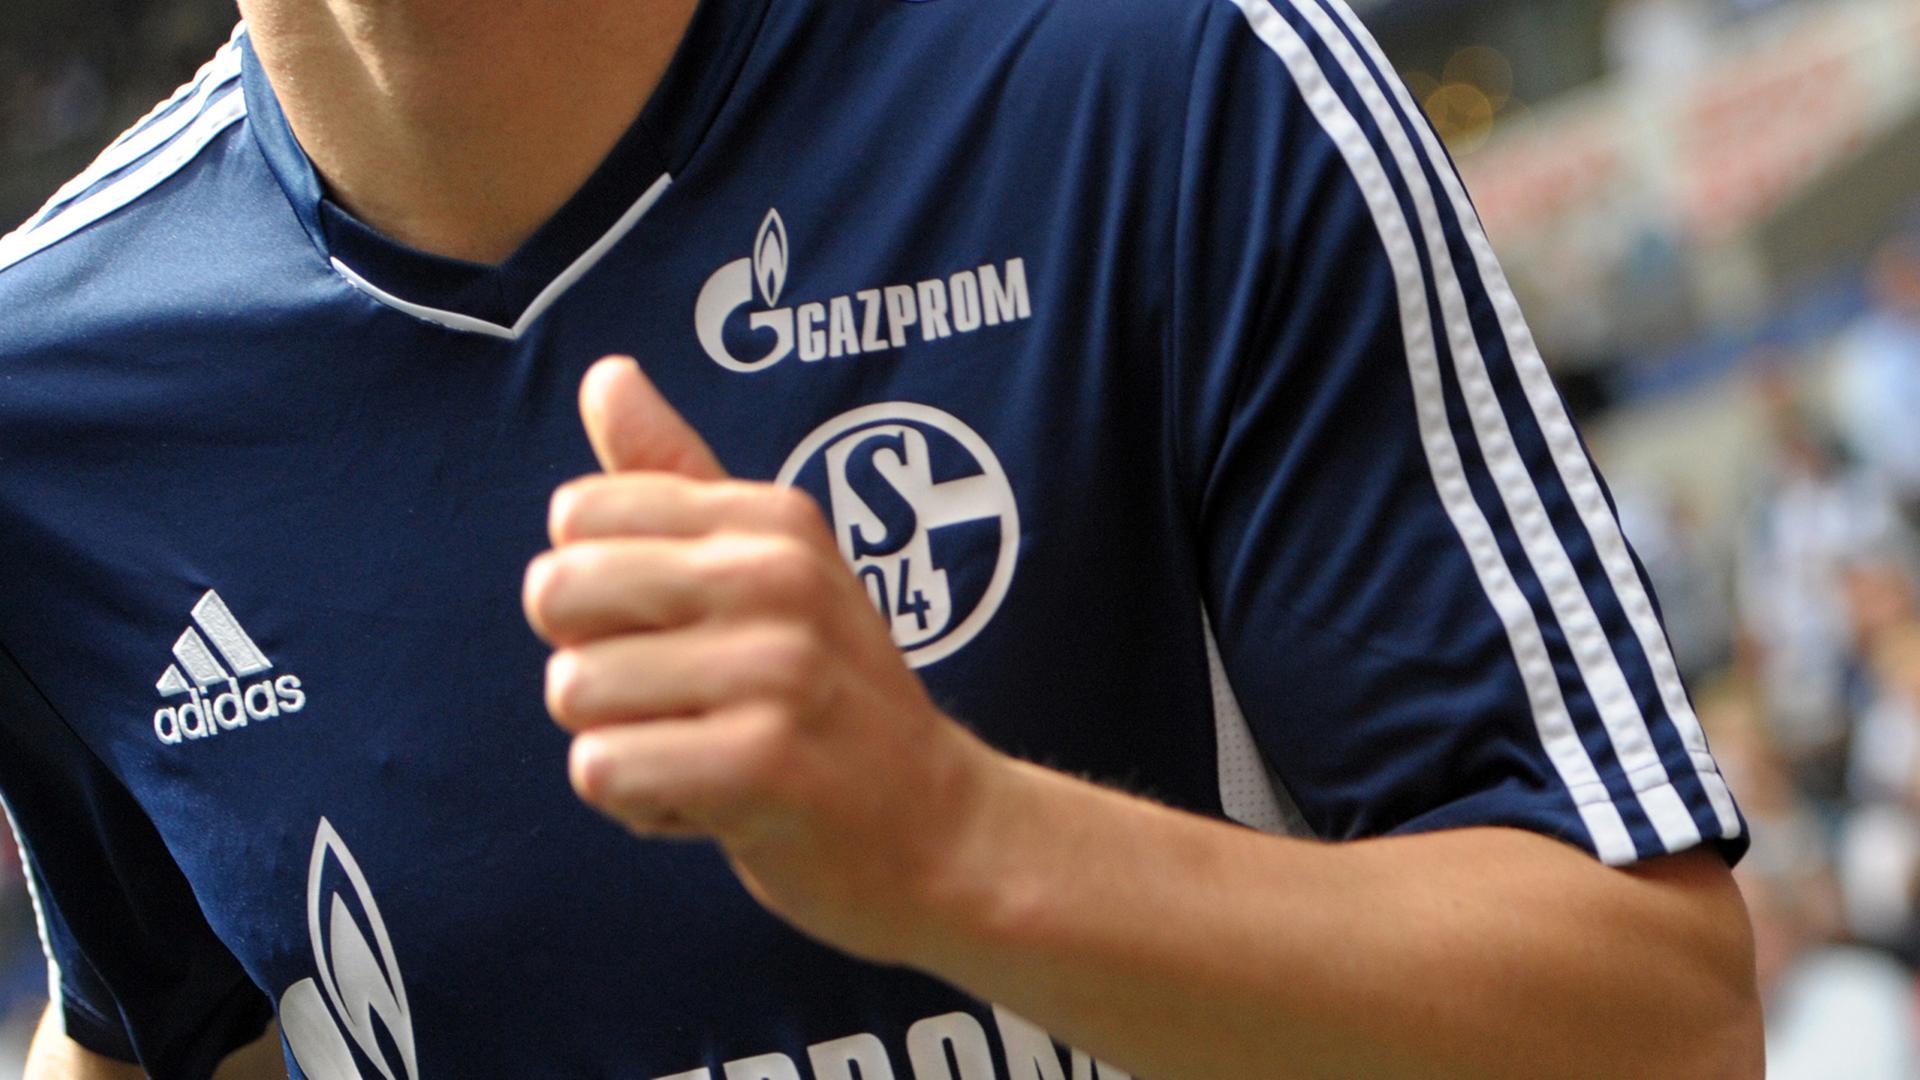 Ein Spieler des FC Schalke 04 trägt das Trikot für die Saison 2012/2013 mit dem Logo des Sponsors Gazprom.